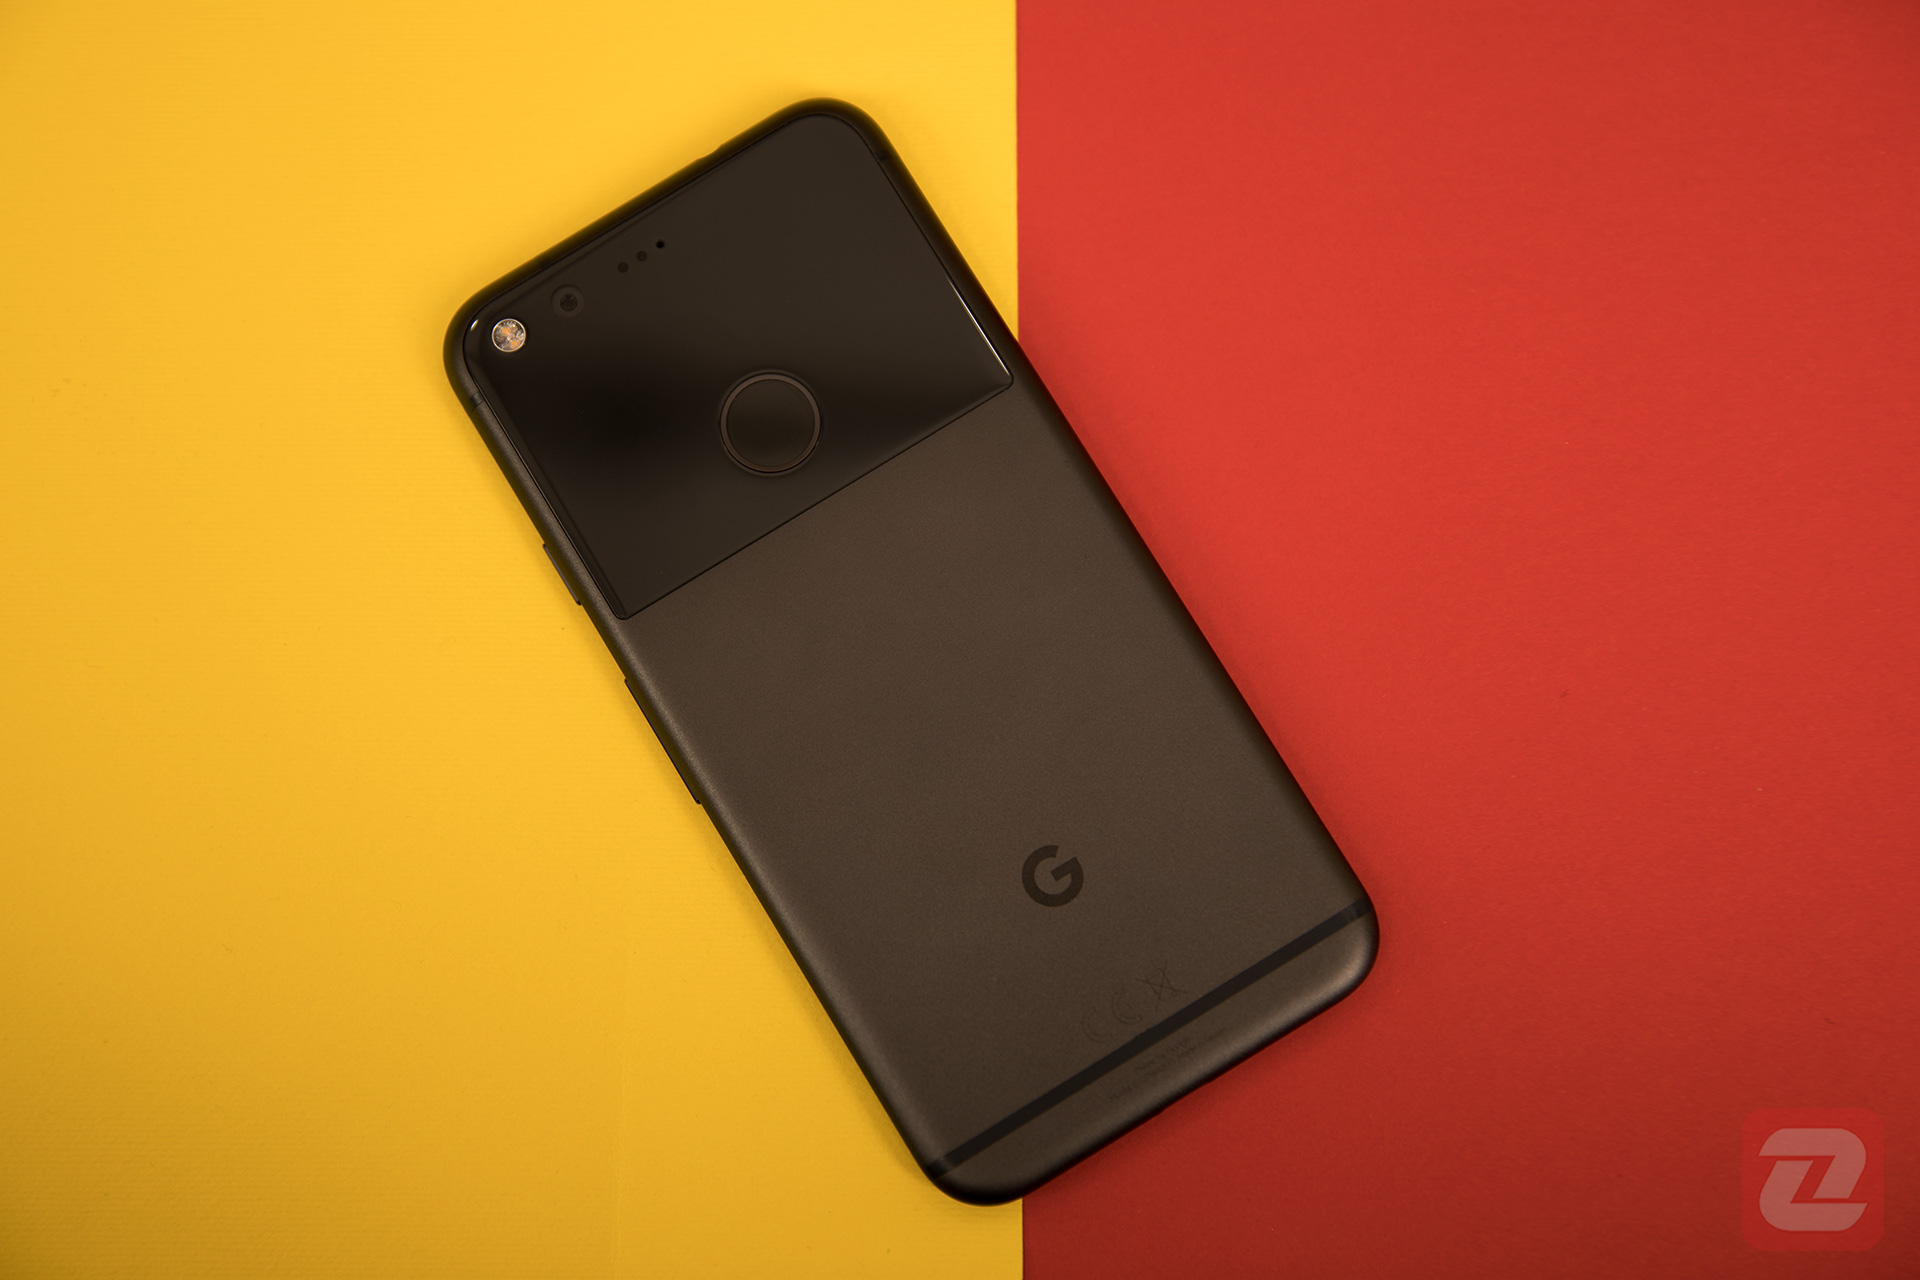 ال جی شایعه ساخت پیکسل 3 گوگل در سال 2018 را رد کرد